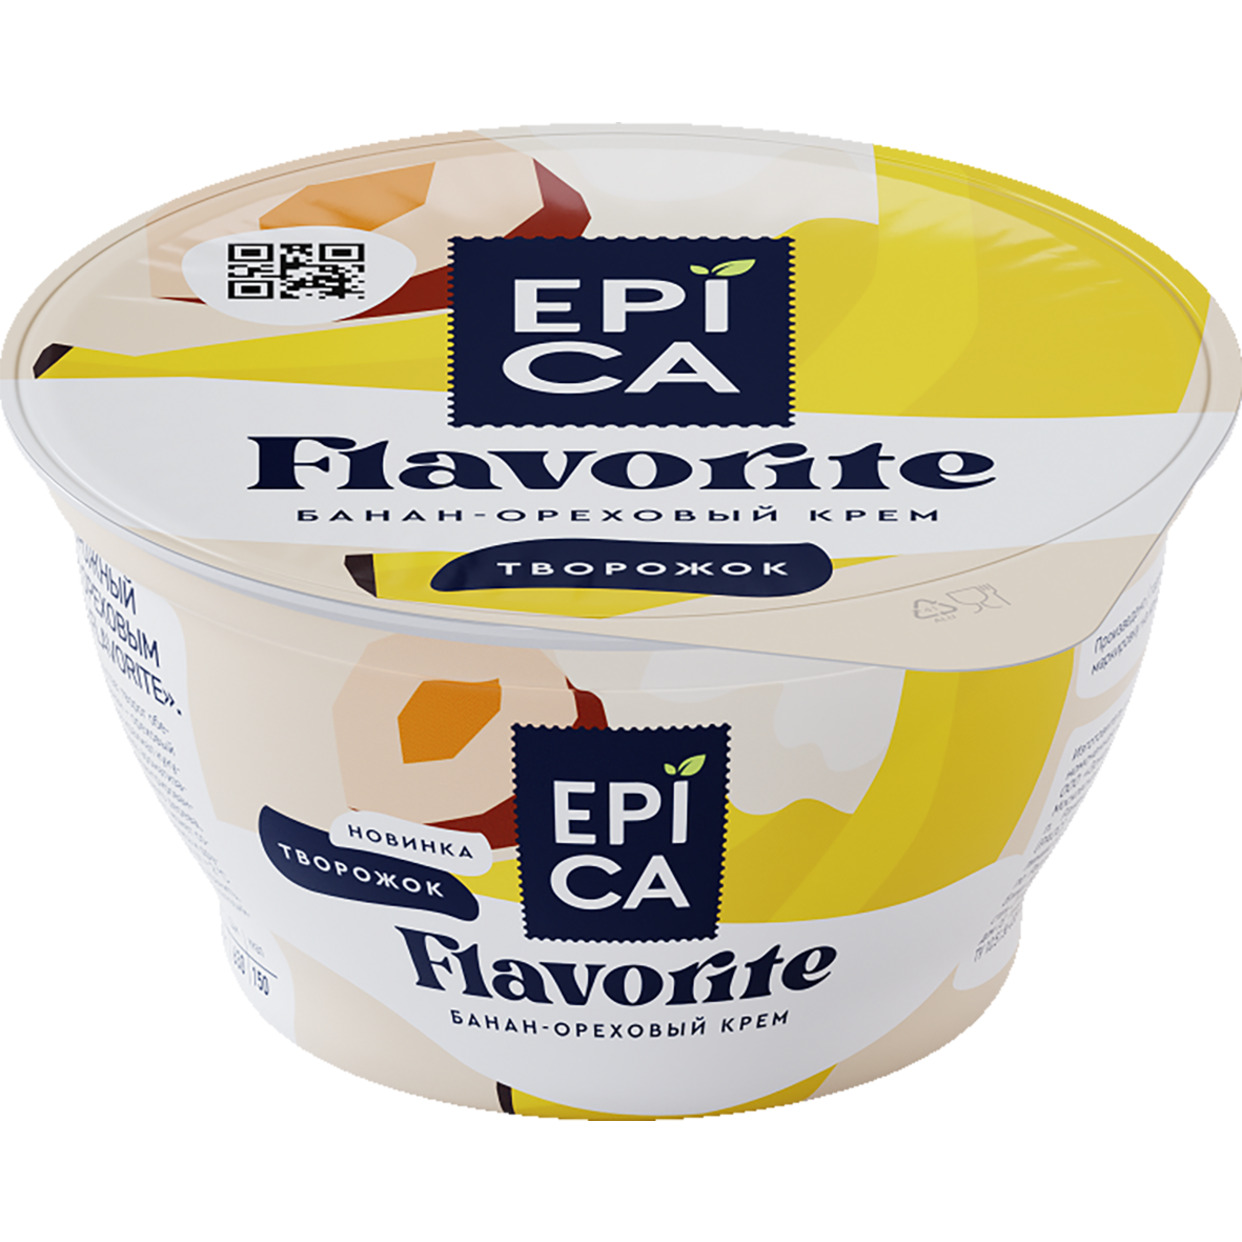 БЗМЖ Десерт творожный с бананом и ореховым кремом EPICA Flavorite 7,6% 130г по акции в Пятерочке